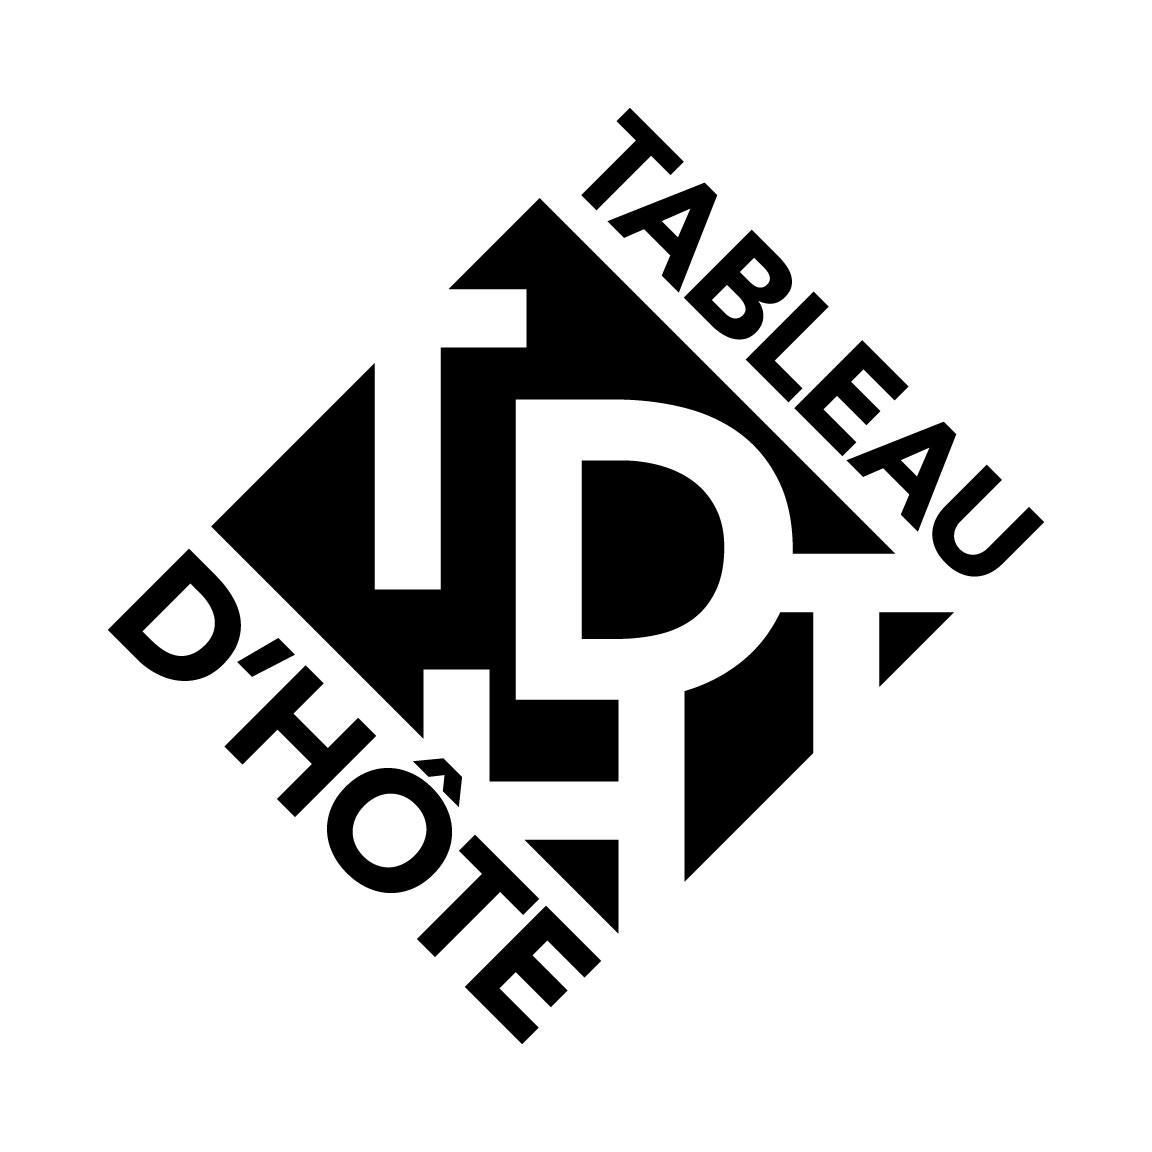 Tableau D'Hôte Theatre logo